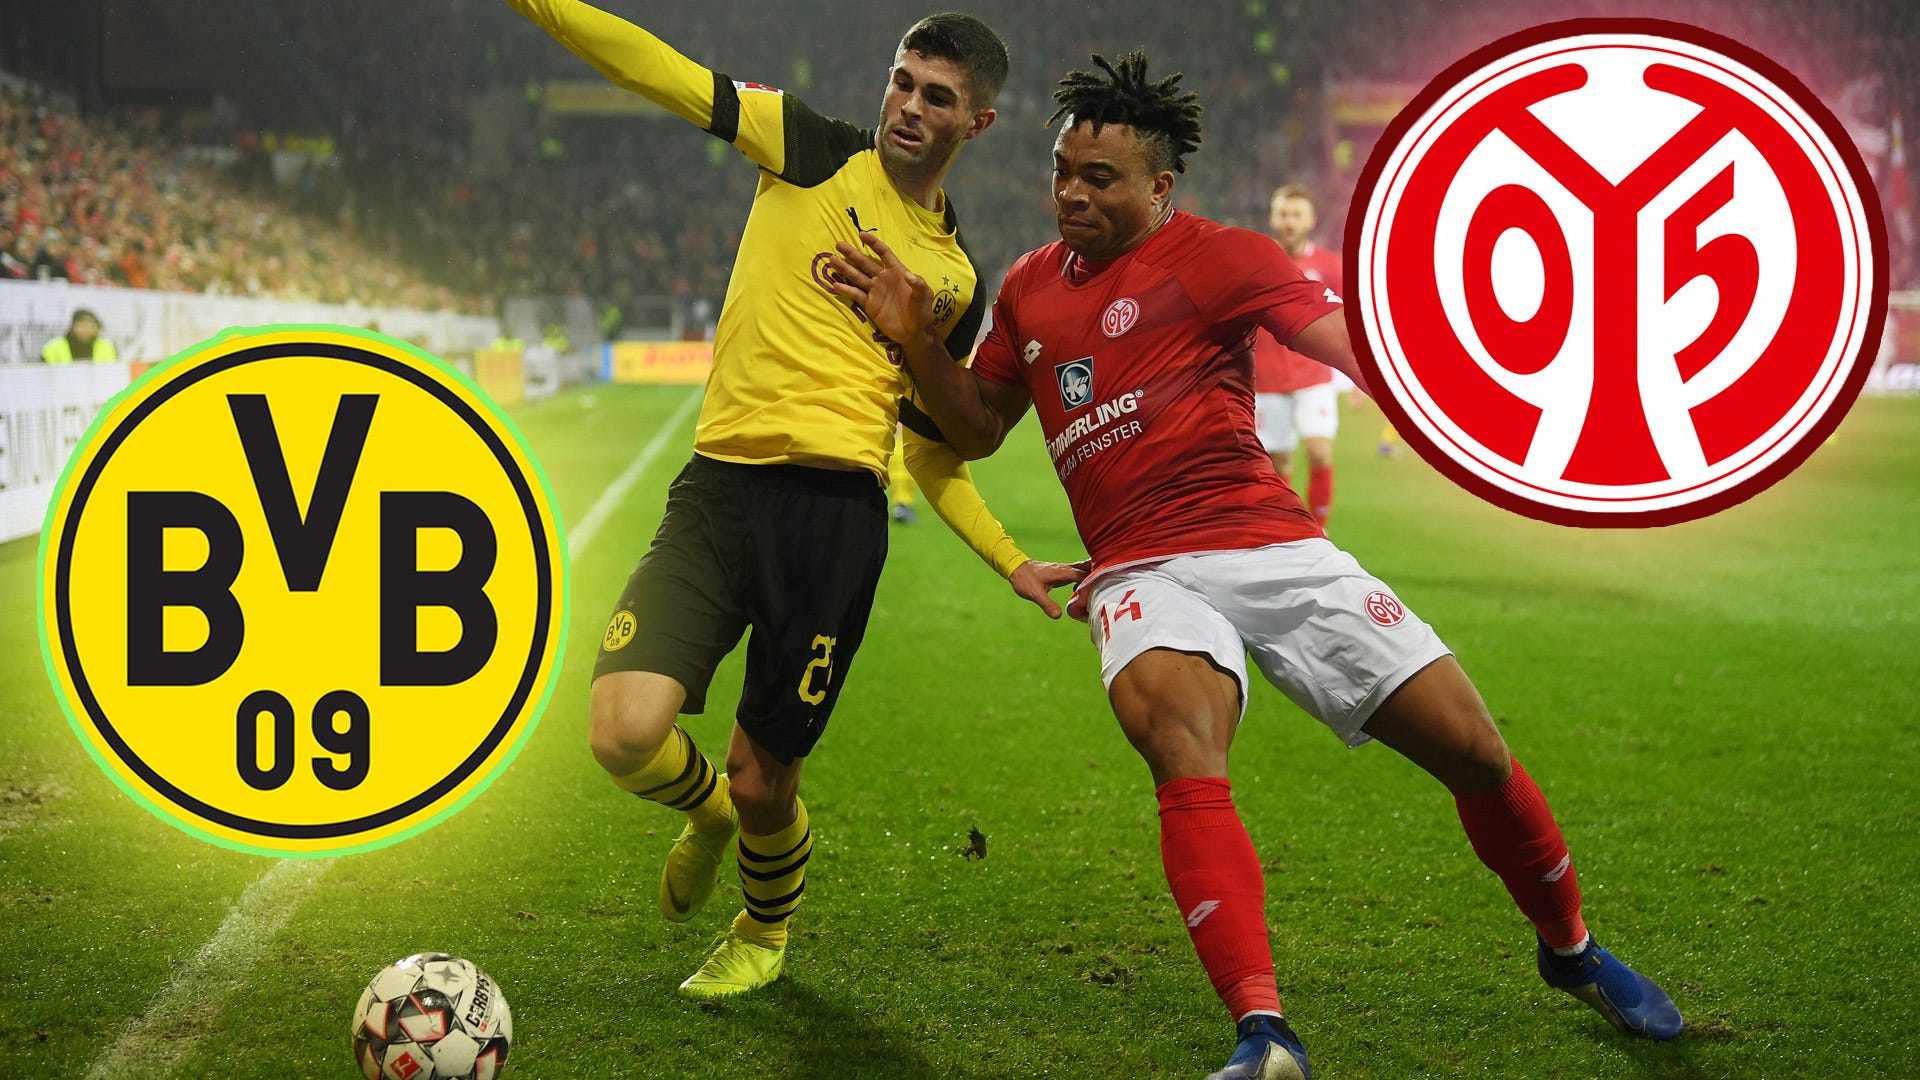 BVB (Borussia Dortmund) vs